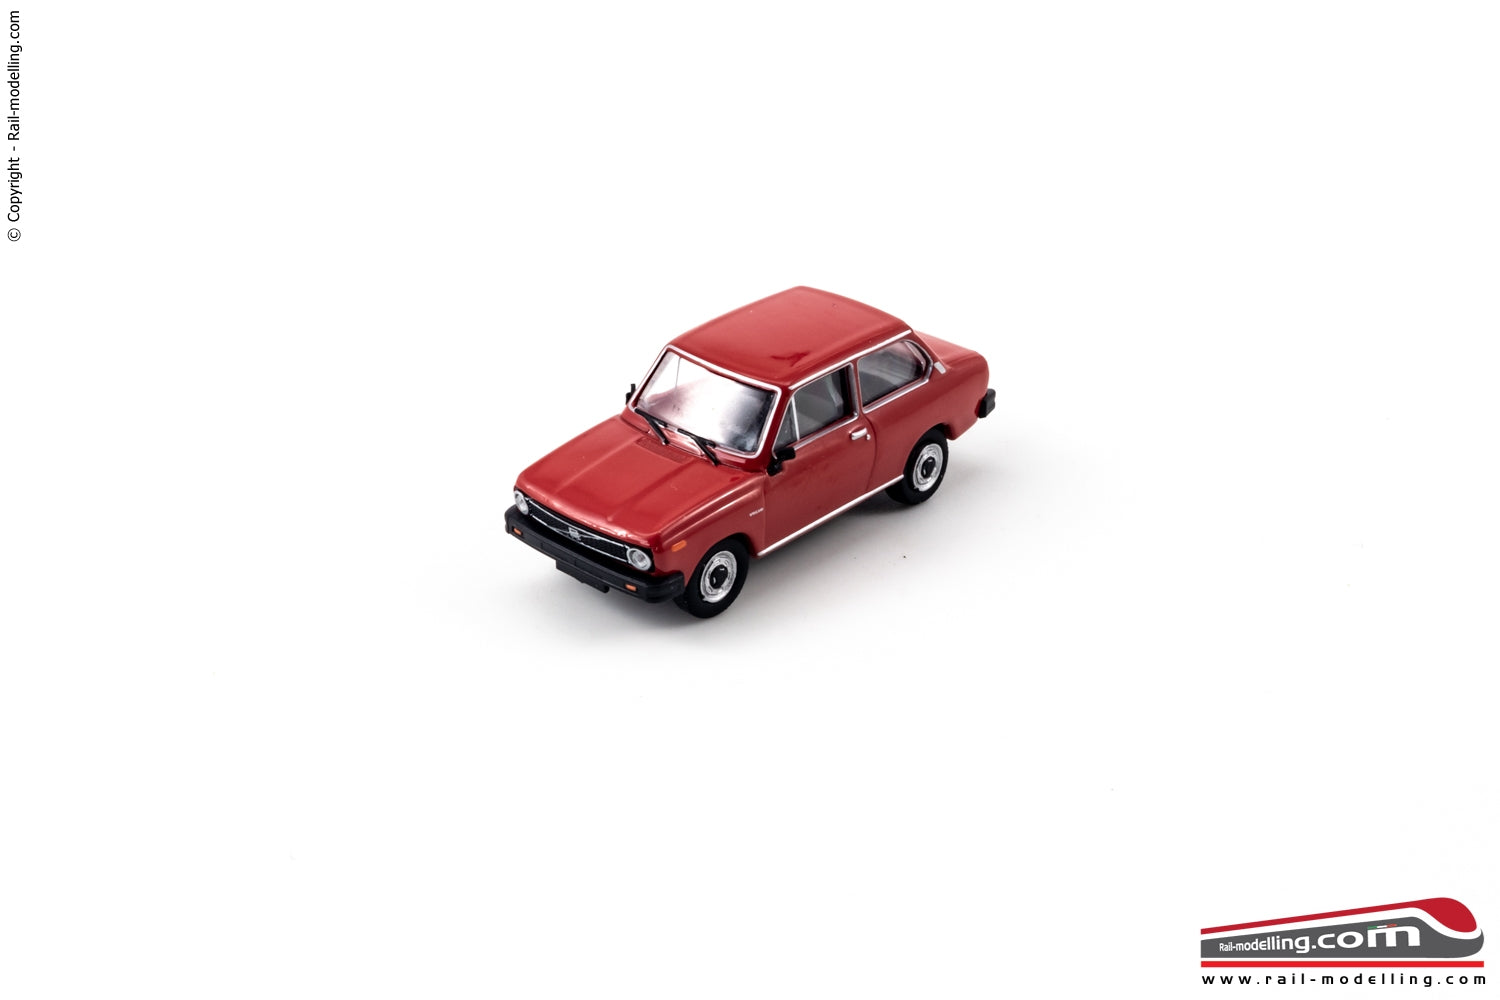 BREKINA 27600 - H0 187 - Auto modellino Volvo 66 1975 rossa